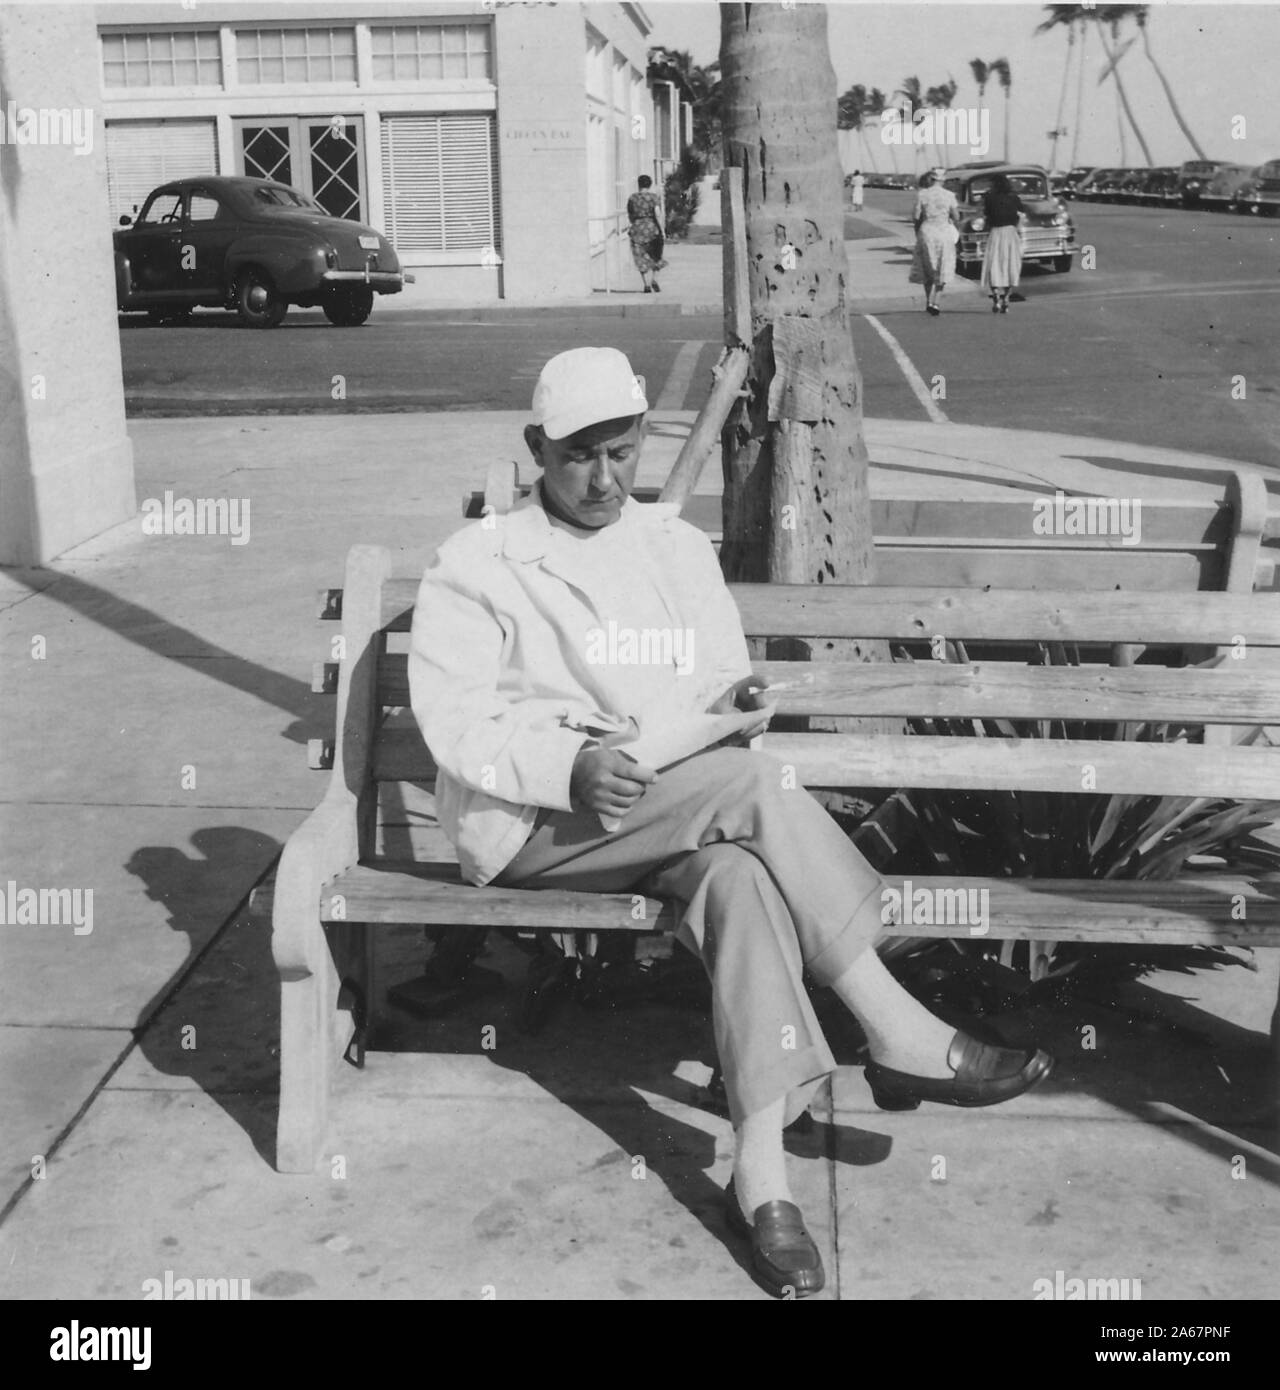 Un homme juif-américain est assis à l'extérieur sur un banc et lit un papier, avec des voitures et des magasins visibles en arrière-plan, 1940. () Banque D'Images